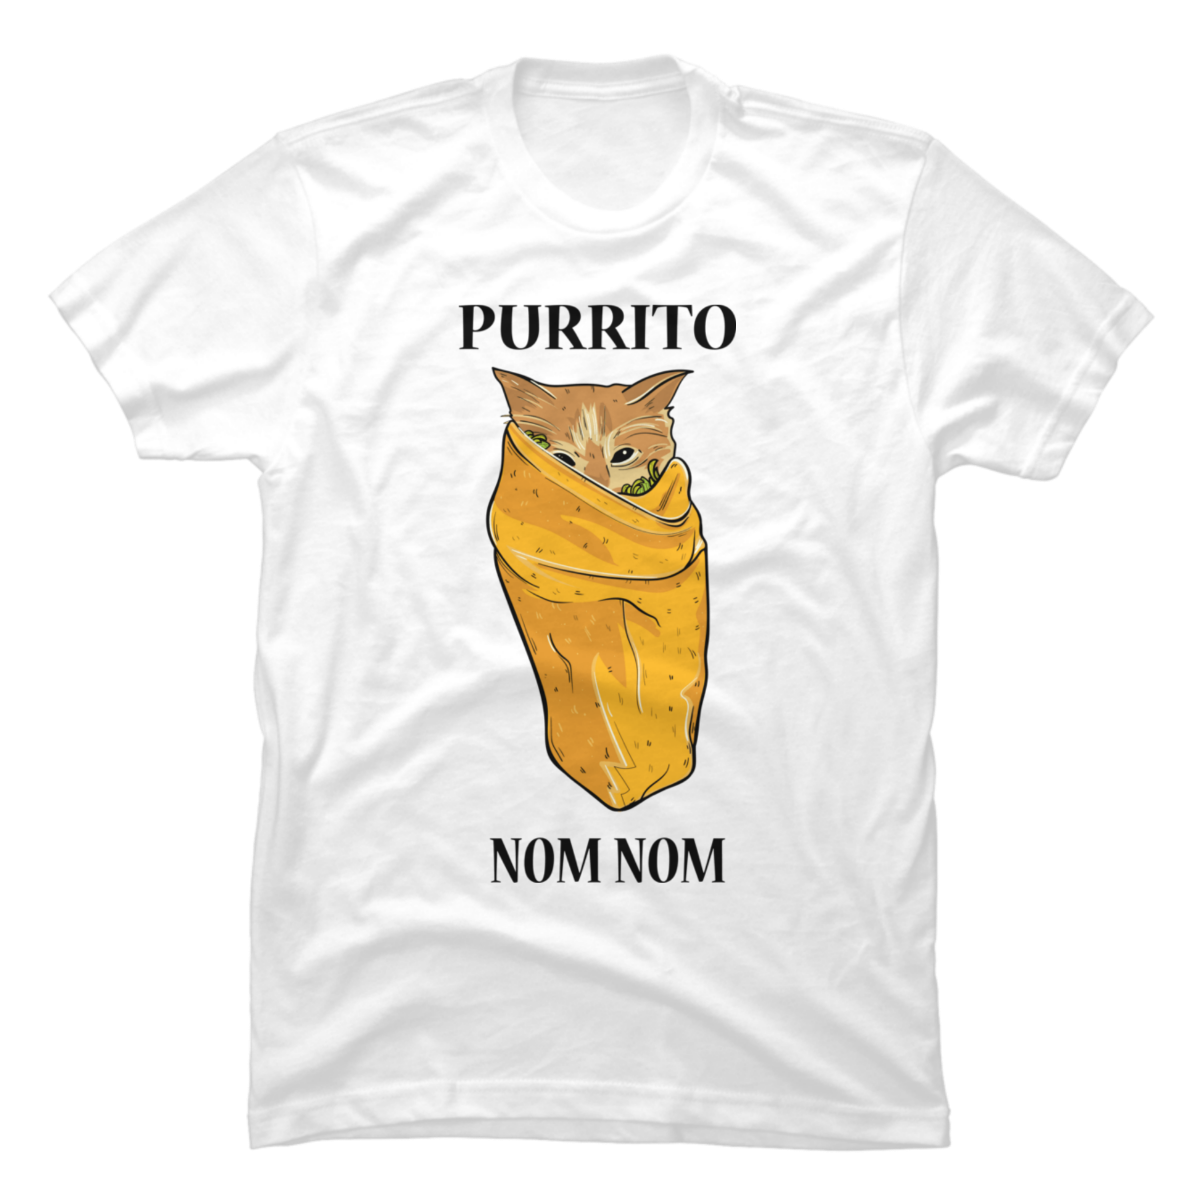 burrito cat shirt